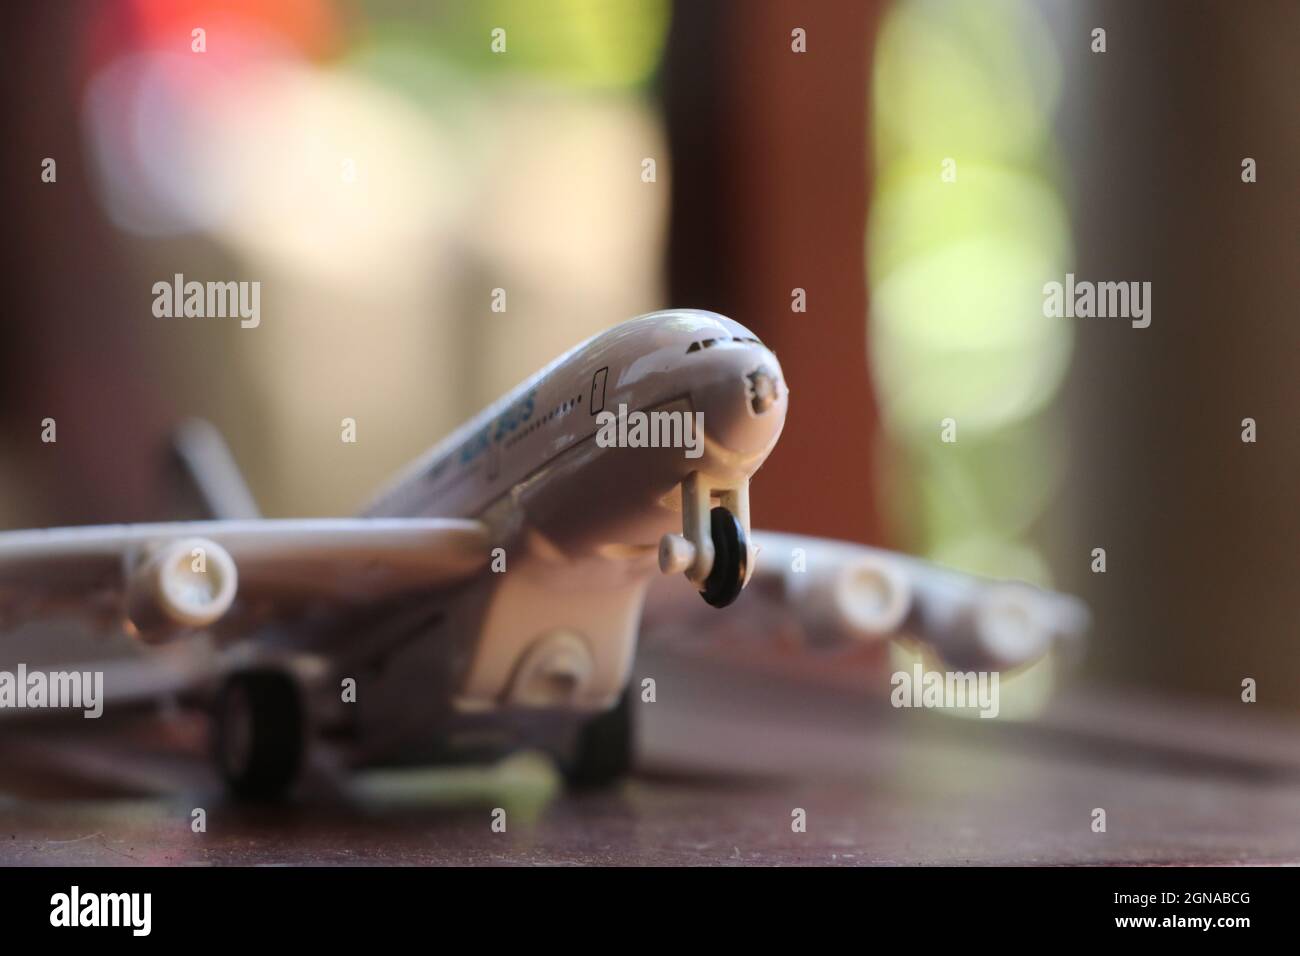 Juguetes de aviones fotografías e imágenes de alta resolución - Página 6 -  Alamy